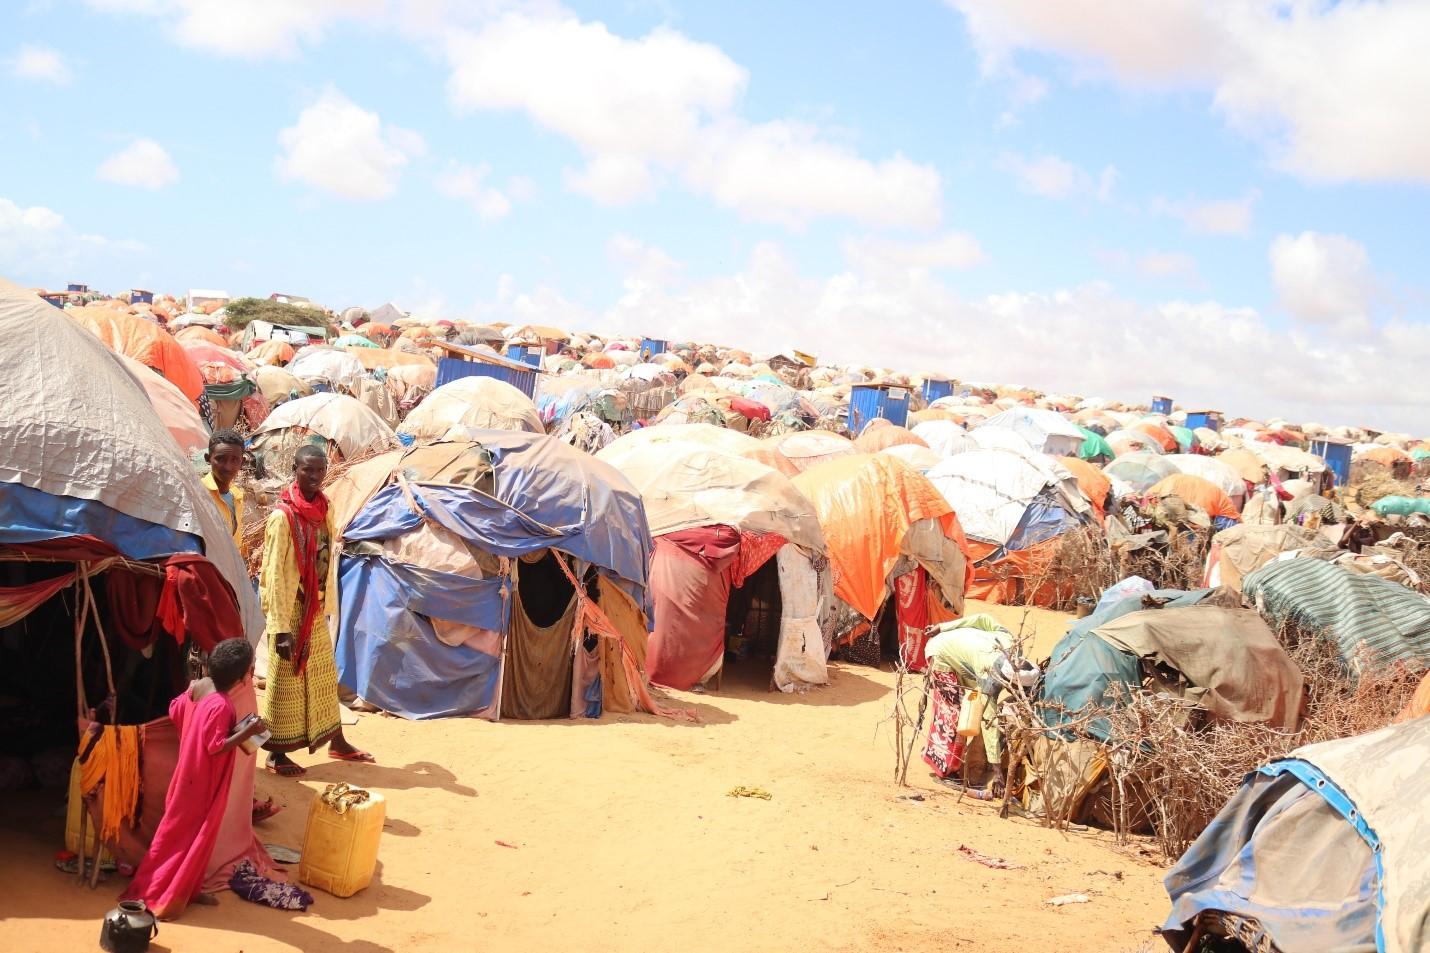 Somalia - Makeshift huts